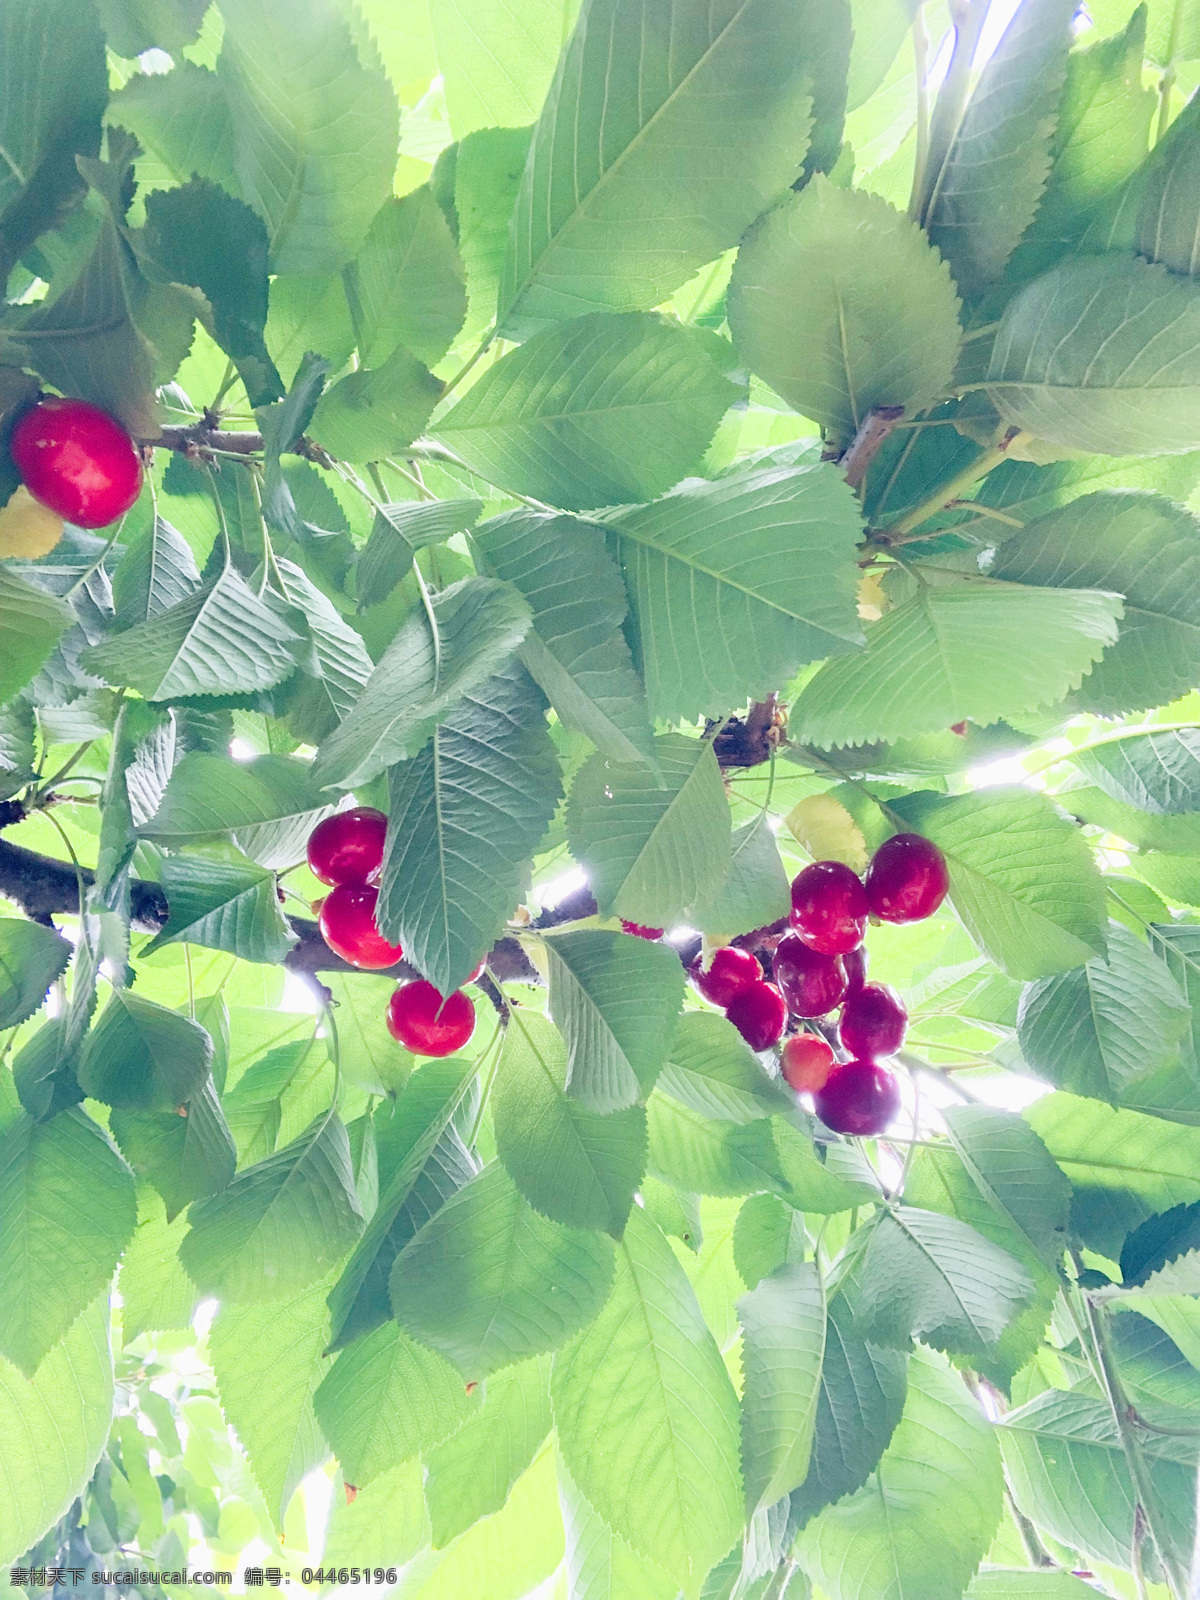 大樱桃 仰拍 绿叶 甜美 自然 生物世界 水果